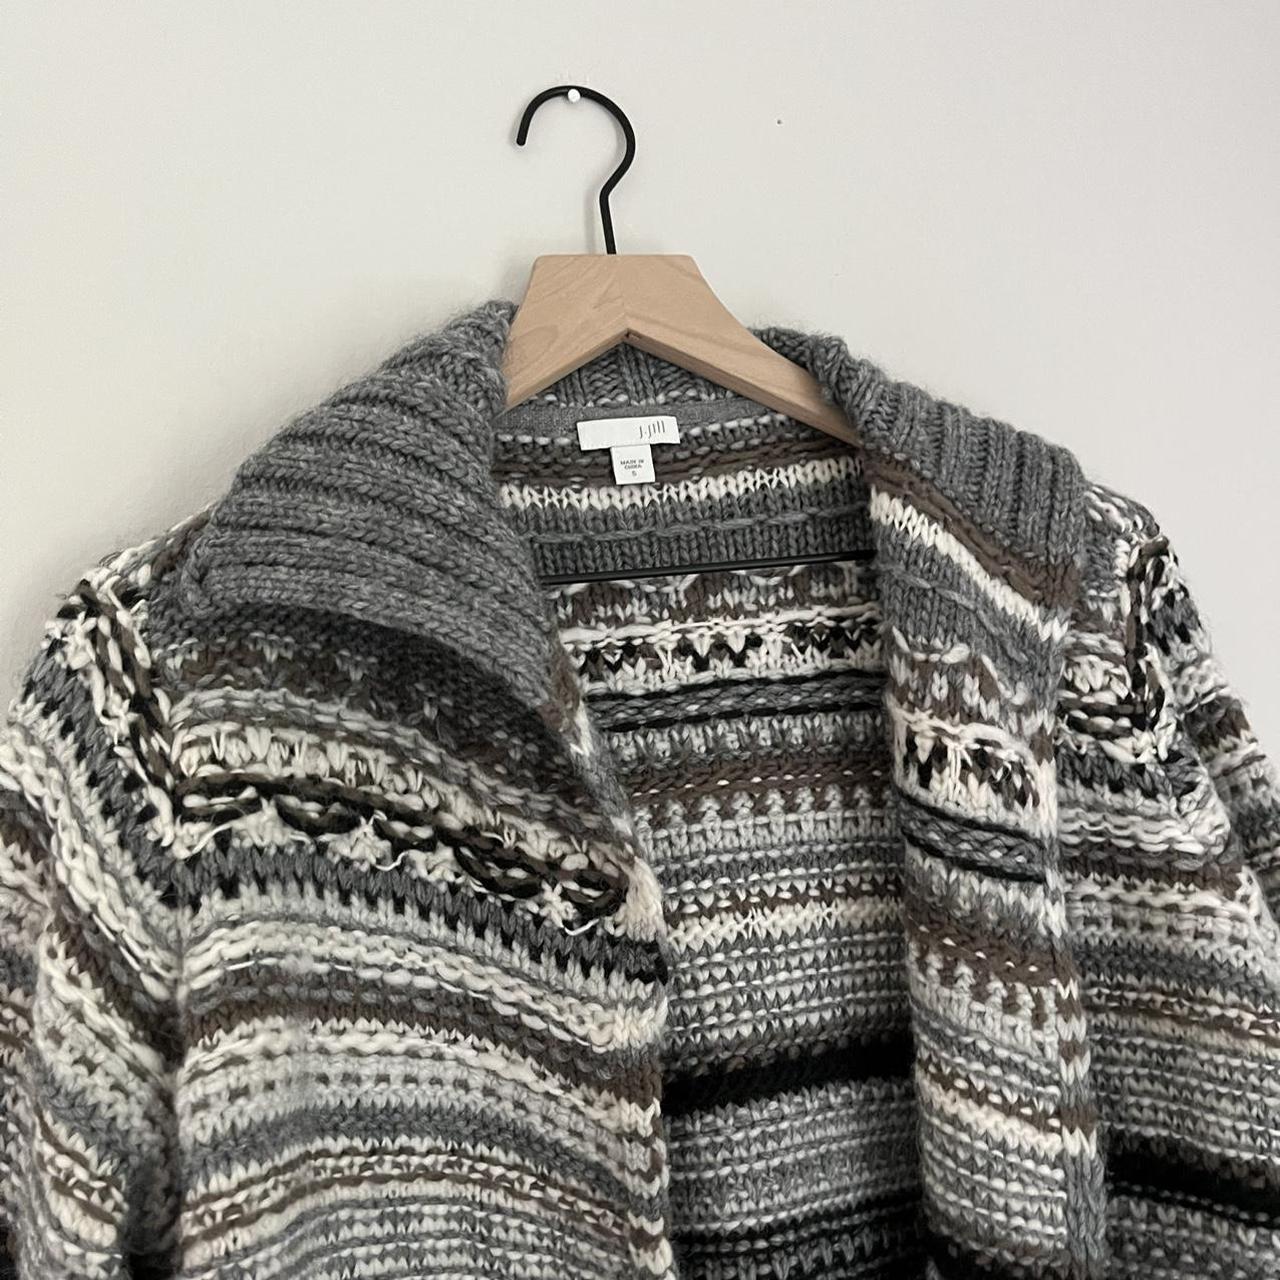 J. Jill Small Blue Grey Knit Wool Blend Hooded Cardigan Sweater